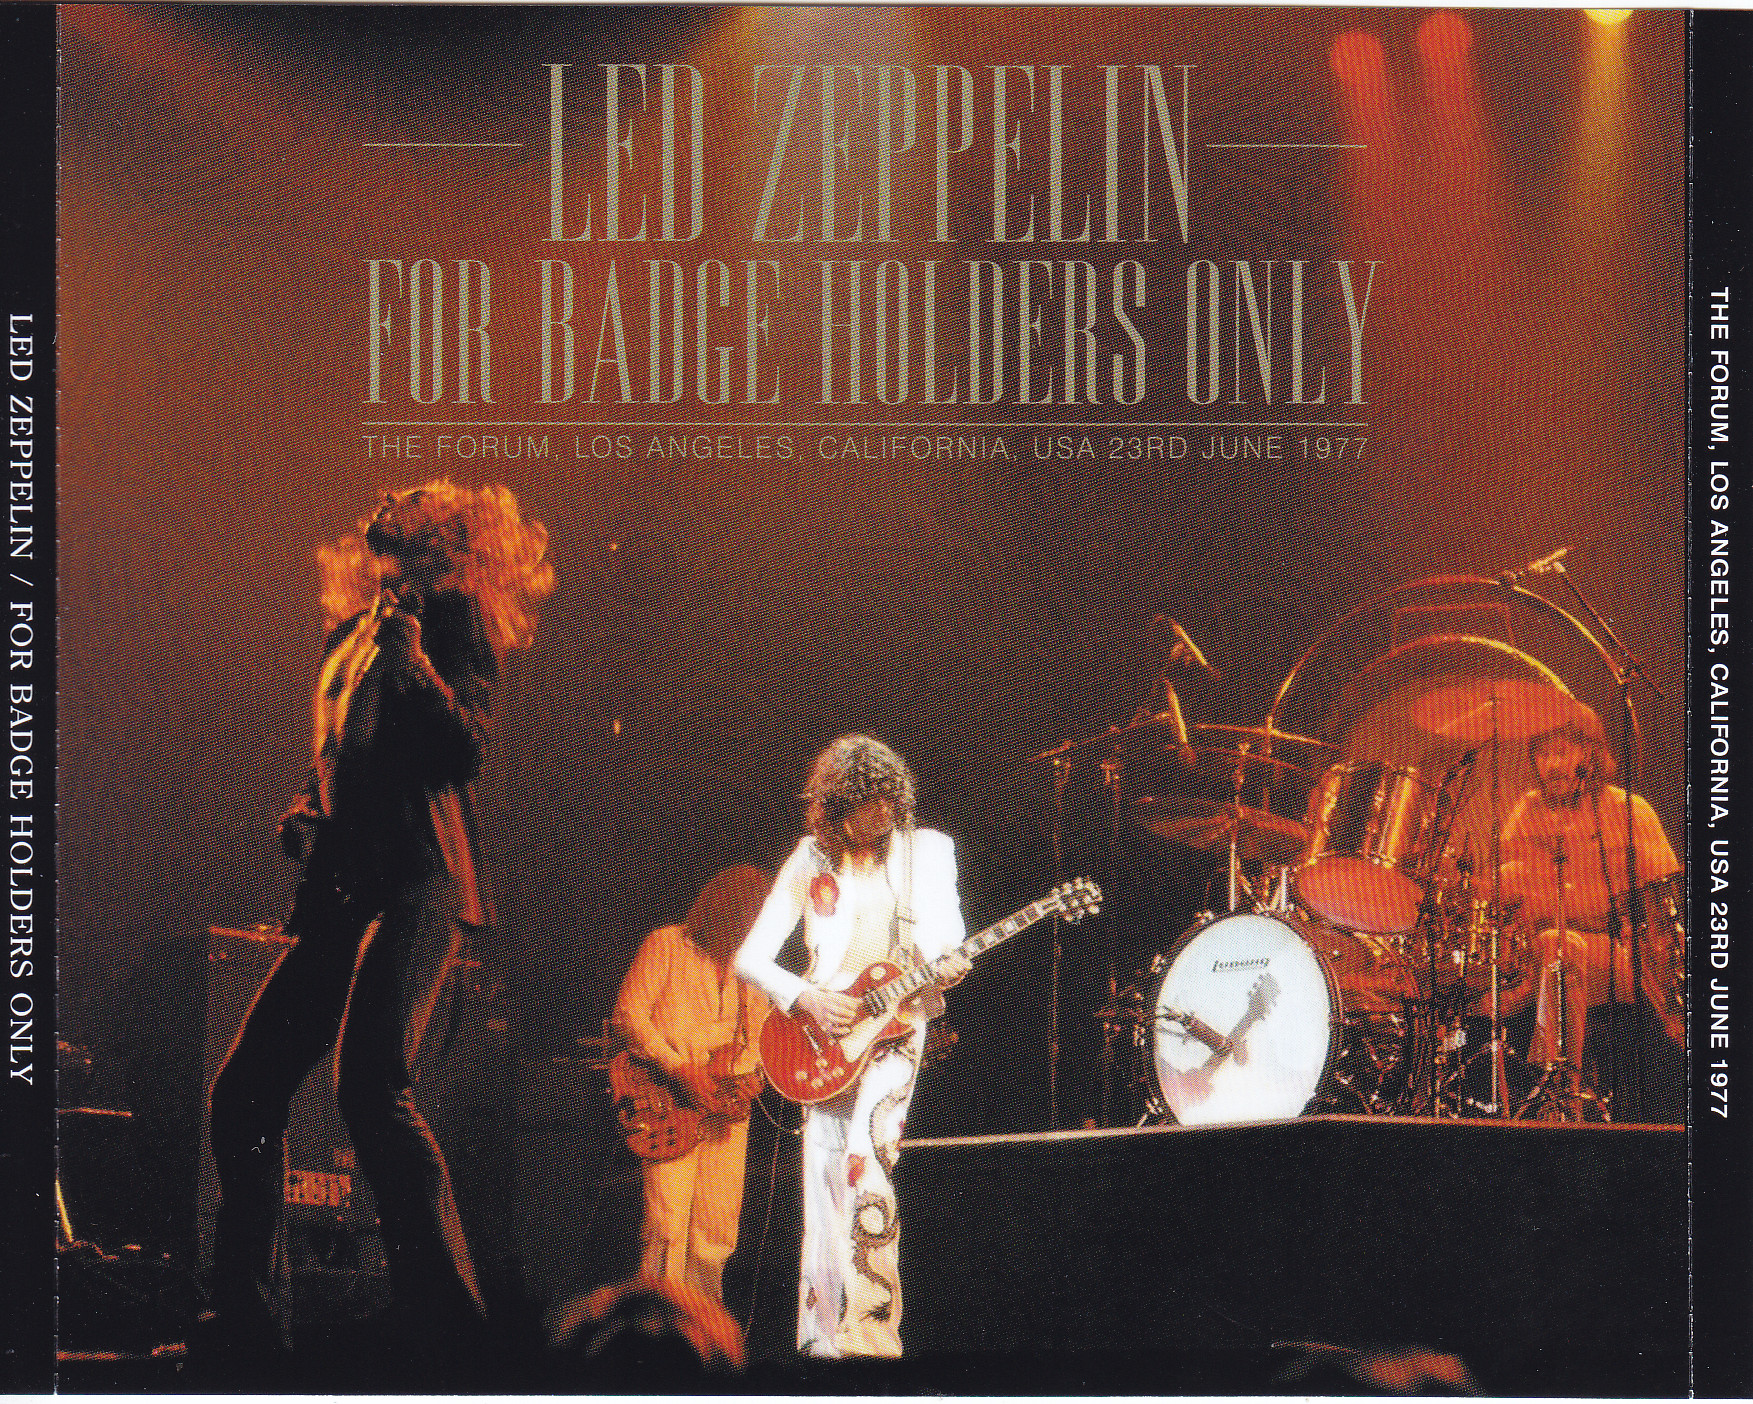 Led Zeppelin / For Badge Holders Only / 3CD – GiGinJapan